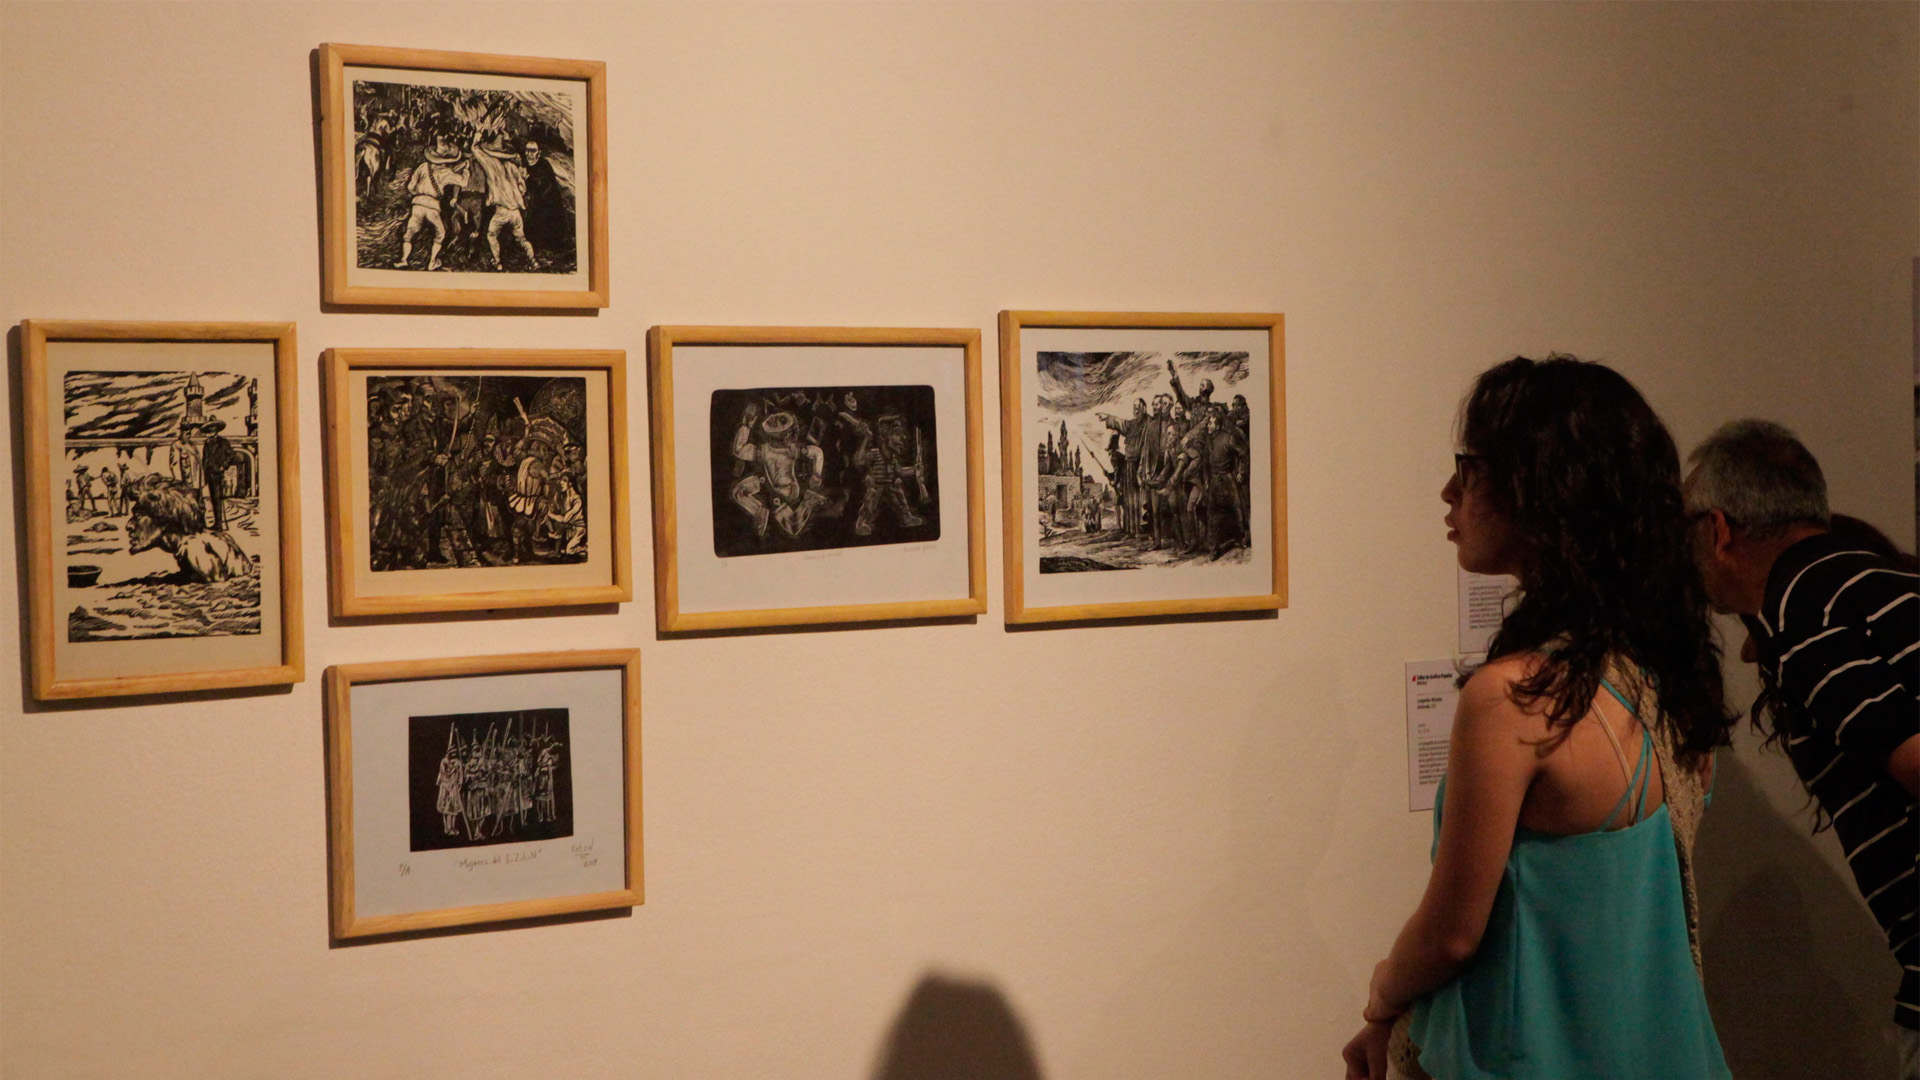 El Bienal Arturo Michelena expone obras de jóvenes artistas hasta final de año